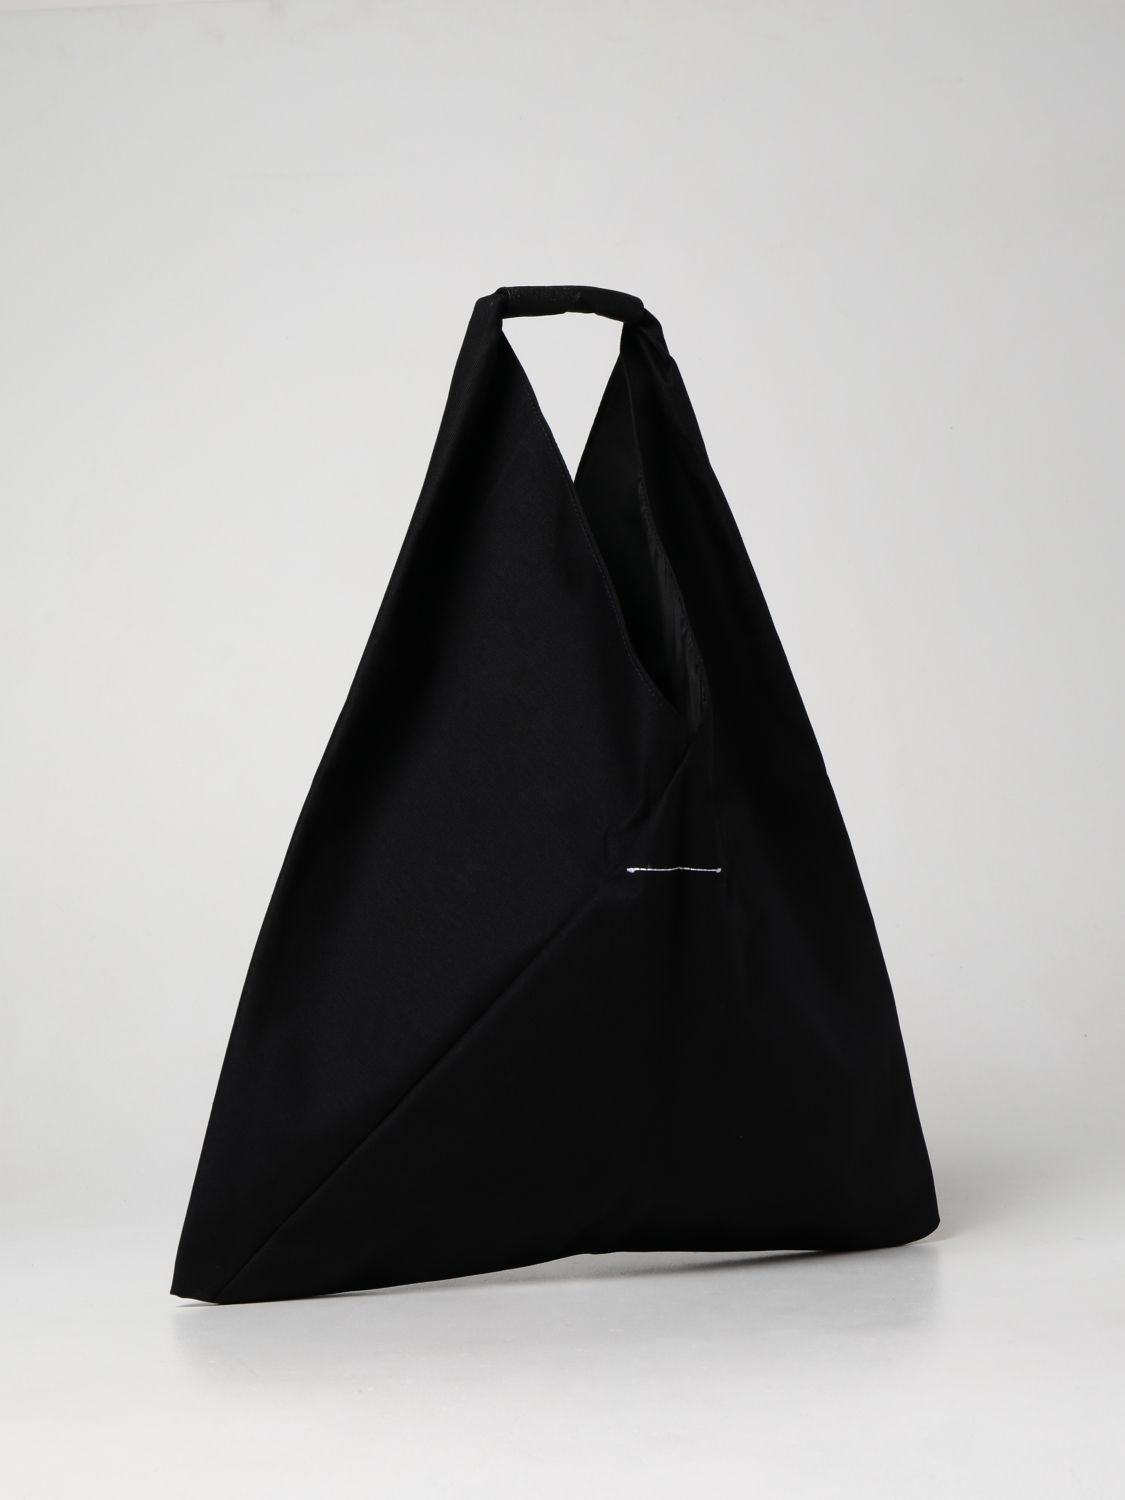 Bags Eastpak: Japanese Mm6 Maison Margiela x Eastpak nylon bag black 2